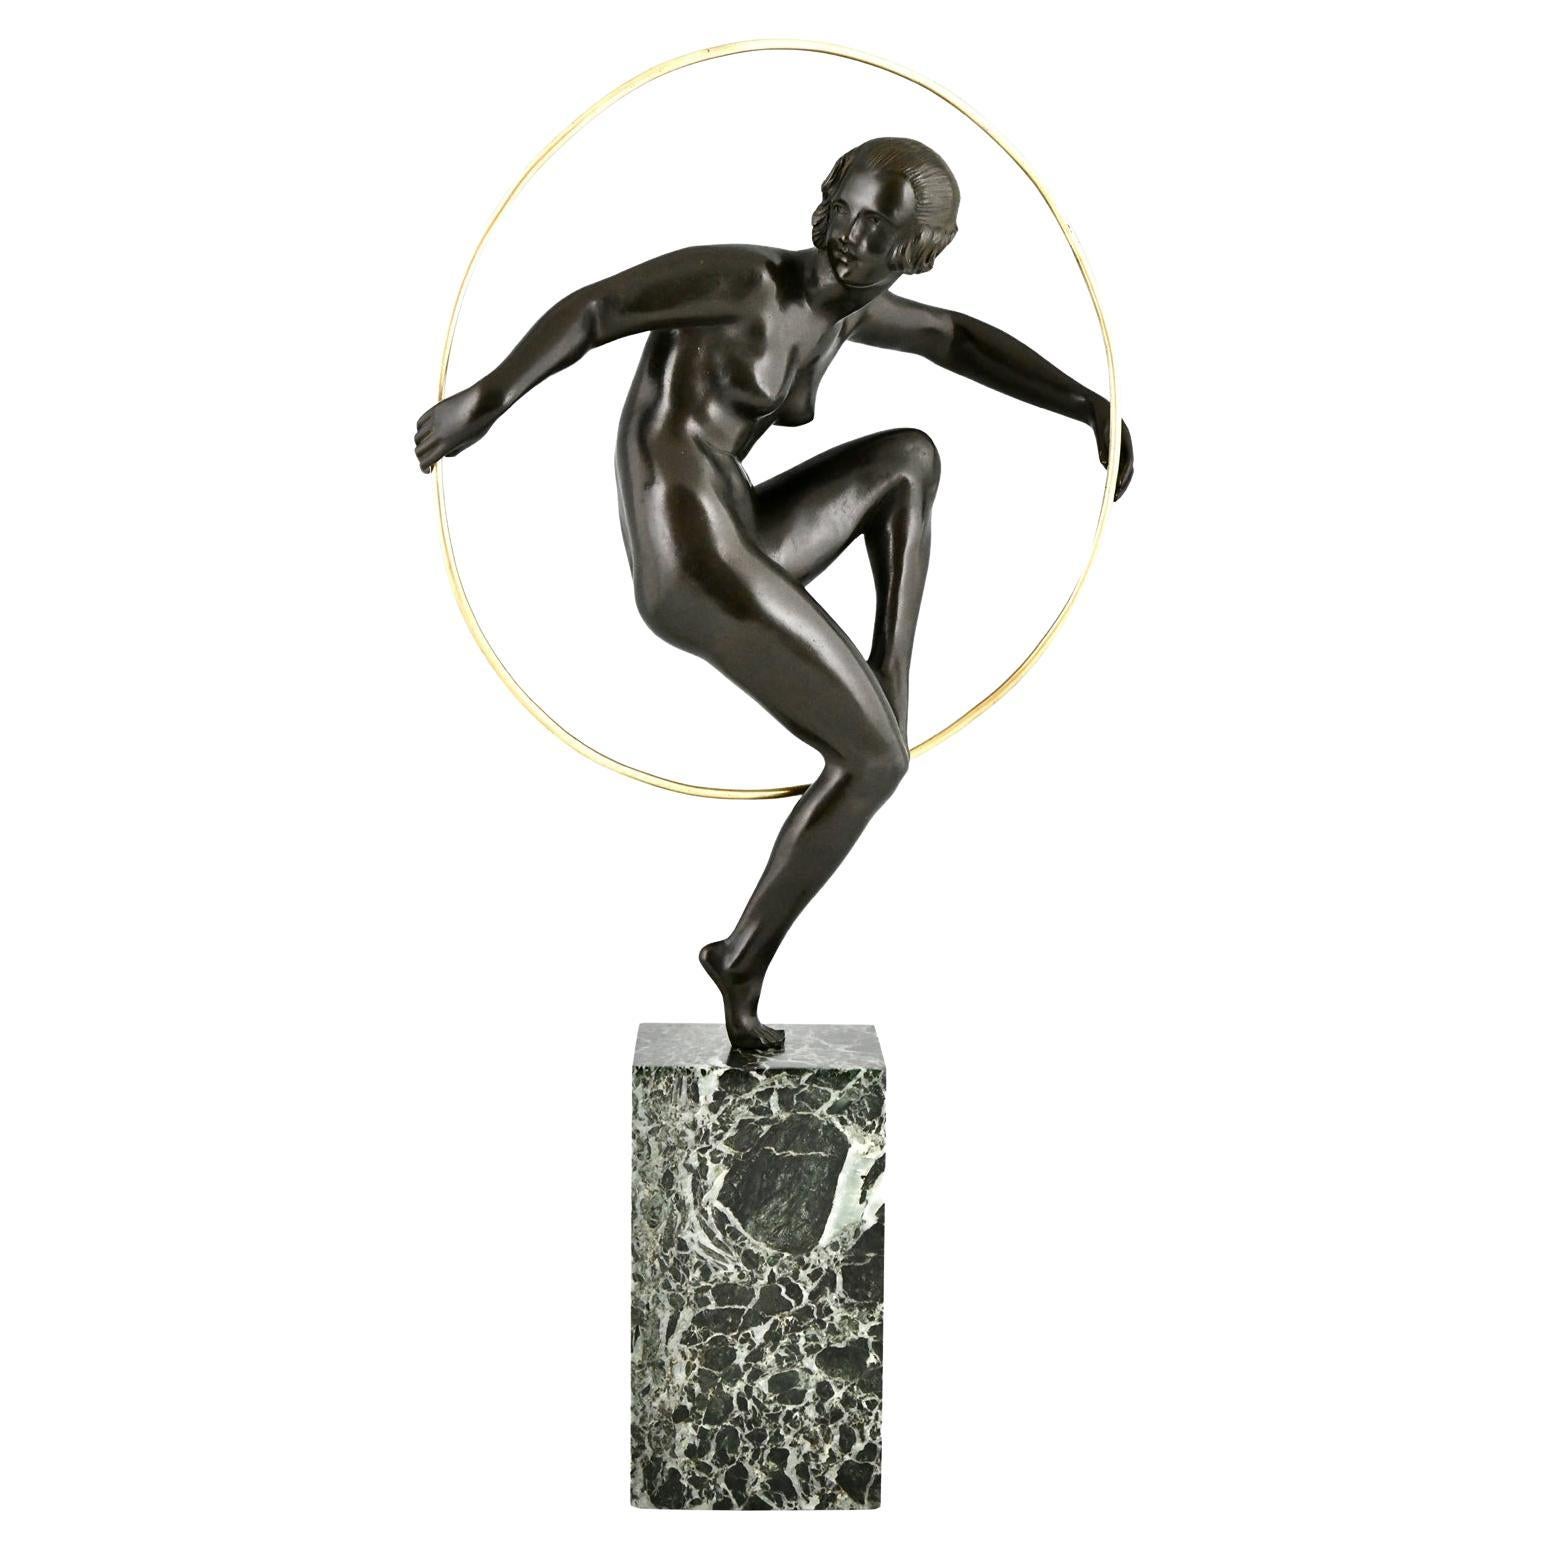 Art Deco bronze nude hoop dancer by Marcel André Bouraine France 1930